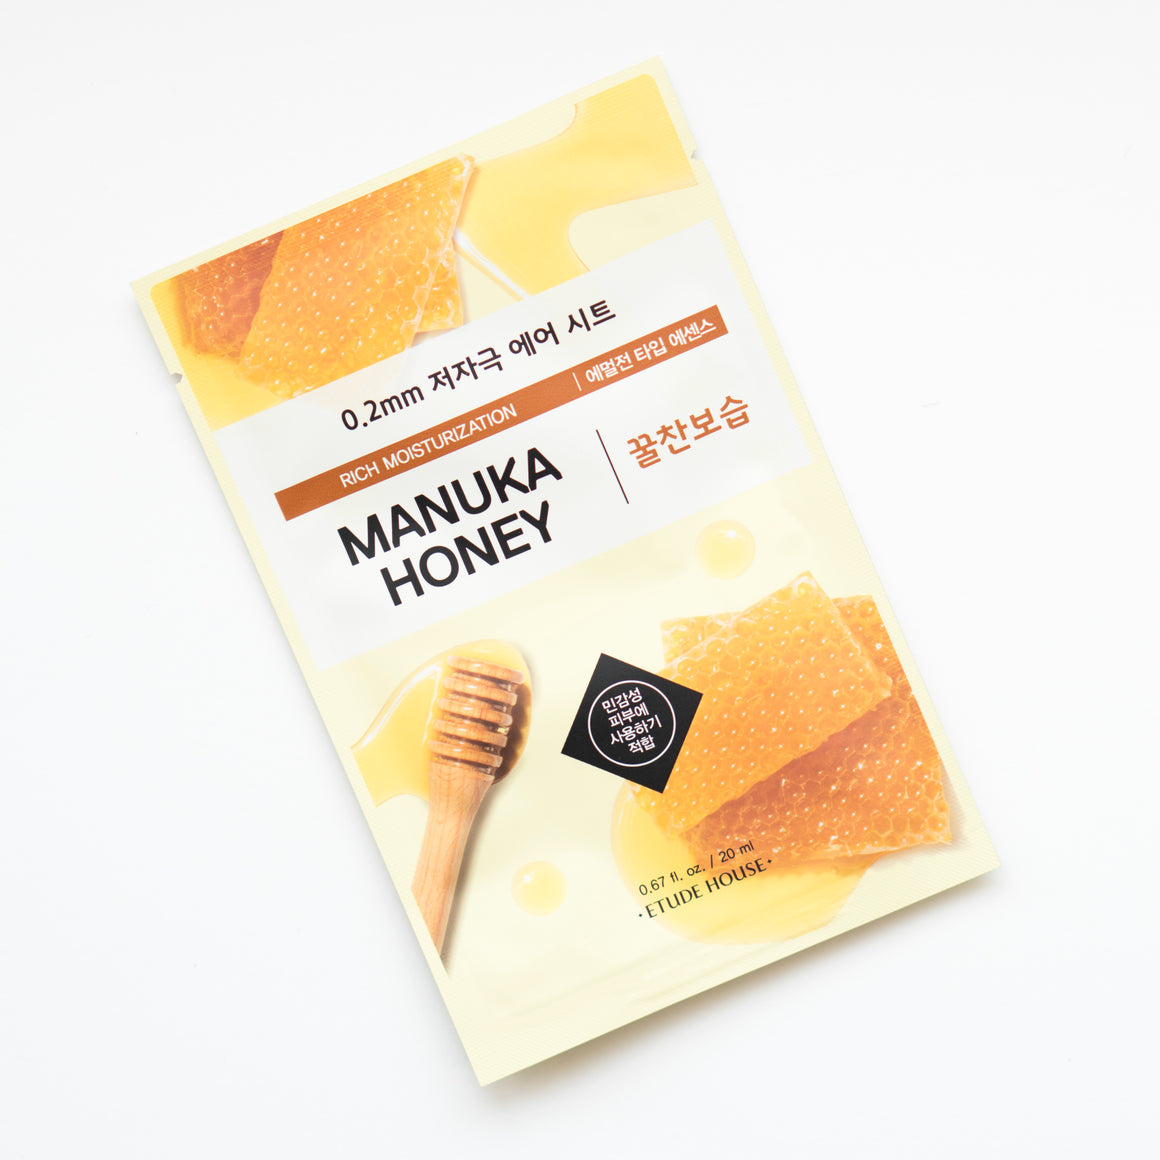 ETUDE HOUSE 0.2 Therapy Air Mask - Manuka Honey